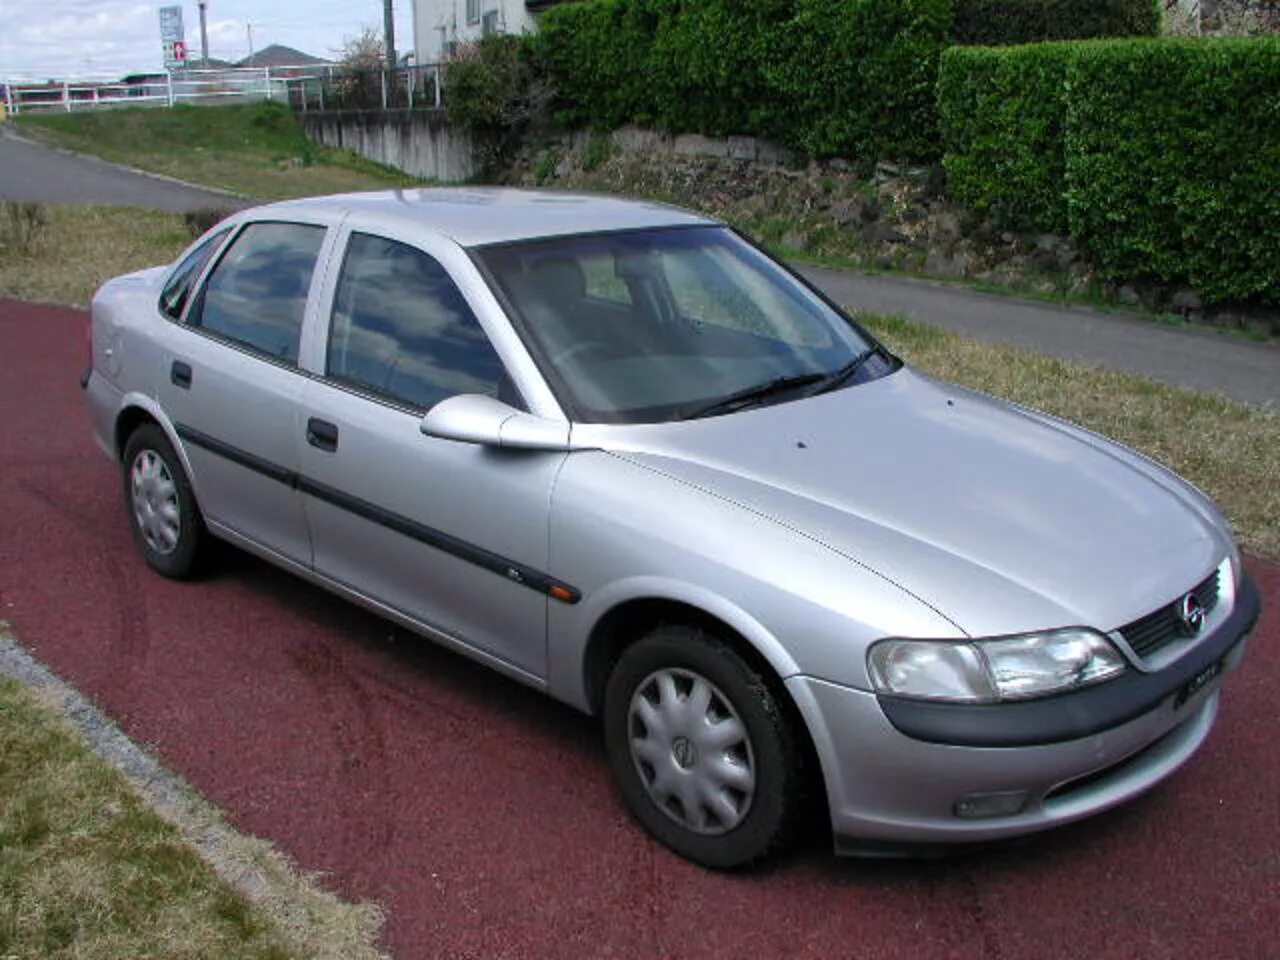 Opel Vectra 1997. Опель Вектра 1997. Опель Вектра 1997 седан. Опель Вектра 1997 года. Опель вектра 98 года